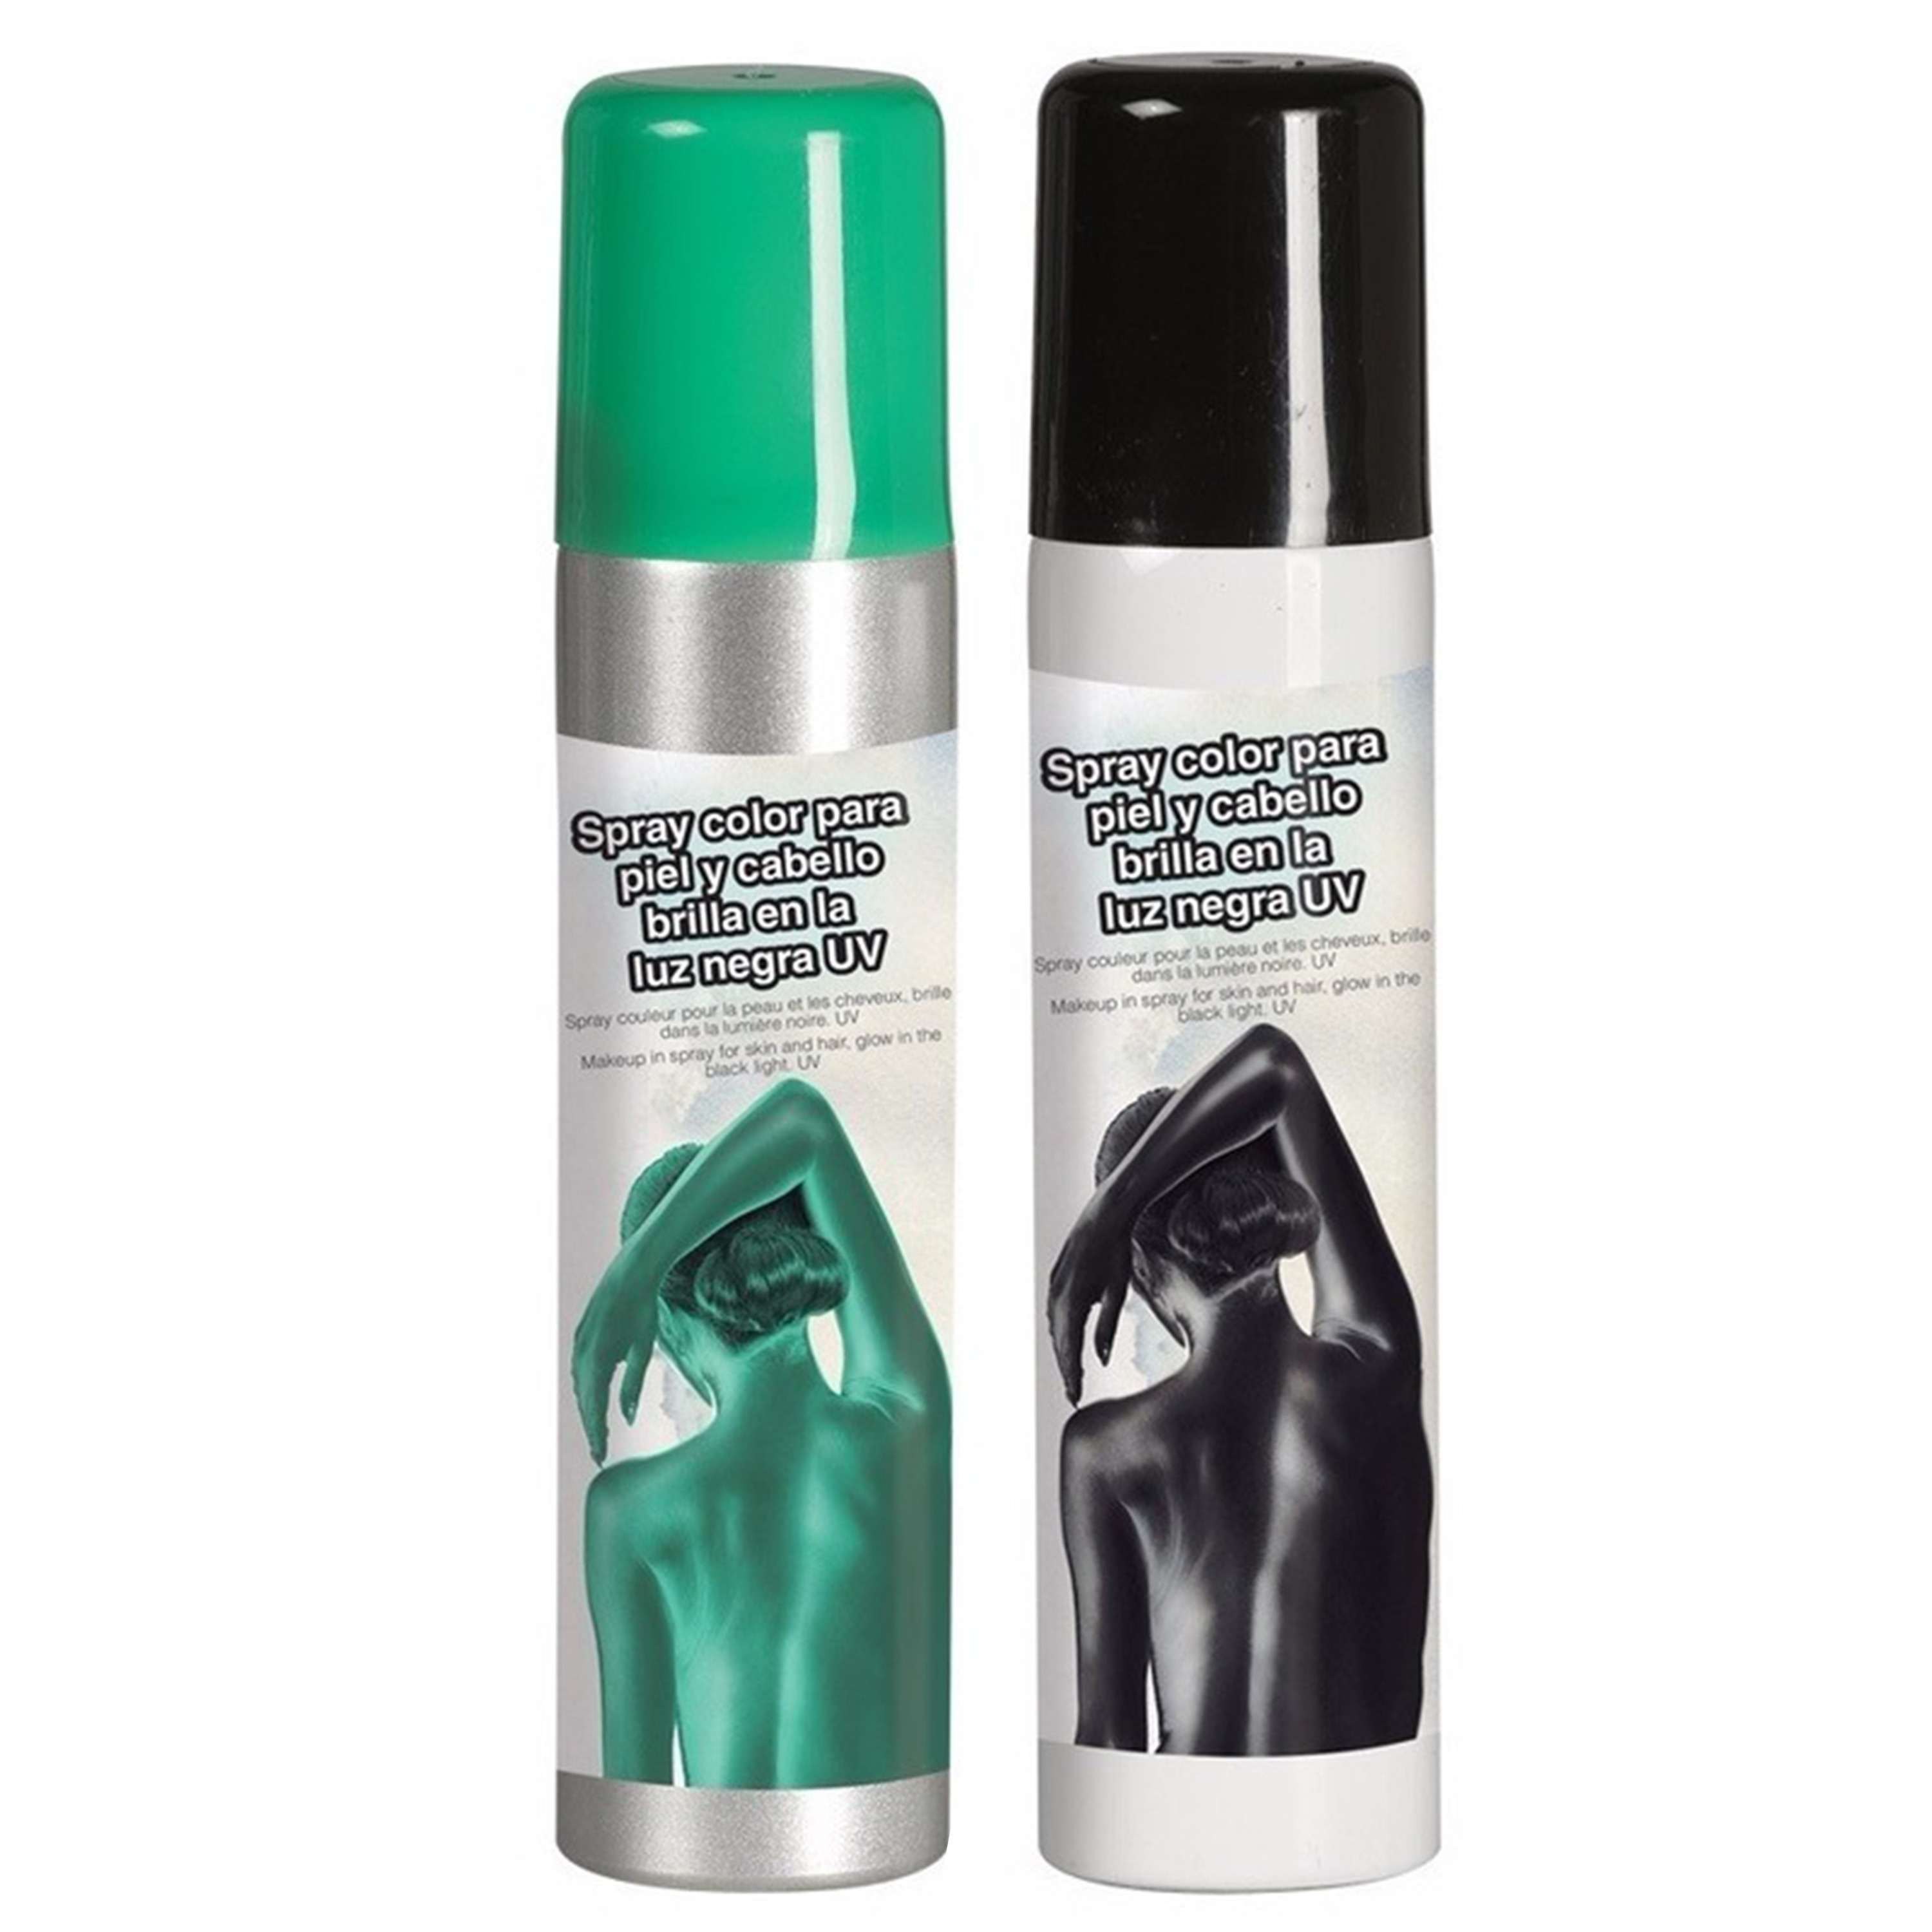 Guirca Haarspray-bodypaint spray 2x kleuren groen en zwart 75 ml